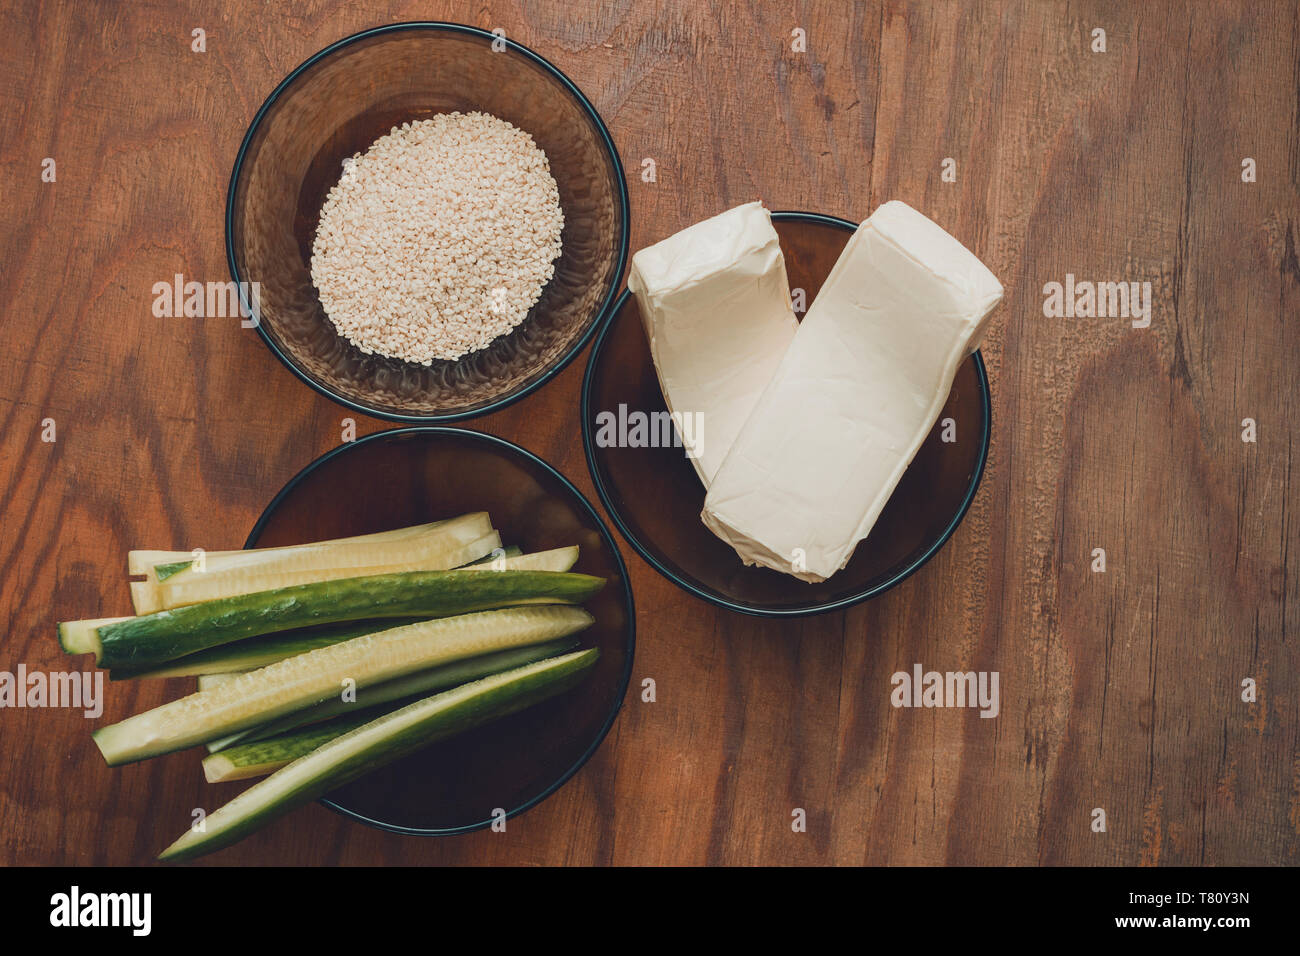 Une partie des ingrédients pour la préparation des sushis dans les assiettes sur la table, à savoir le riz, de fromage fondu, de concombres et de bâtonnets de crabe 2019 Banque D'Images